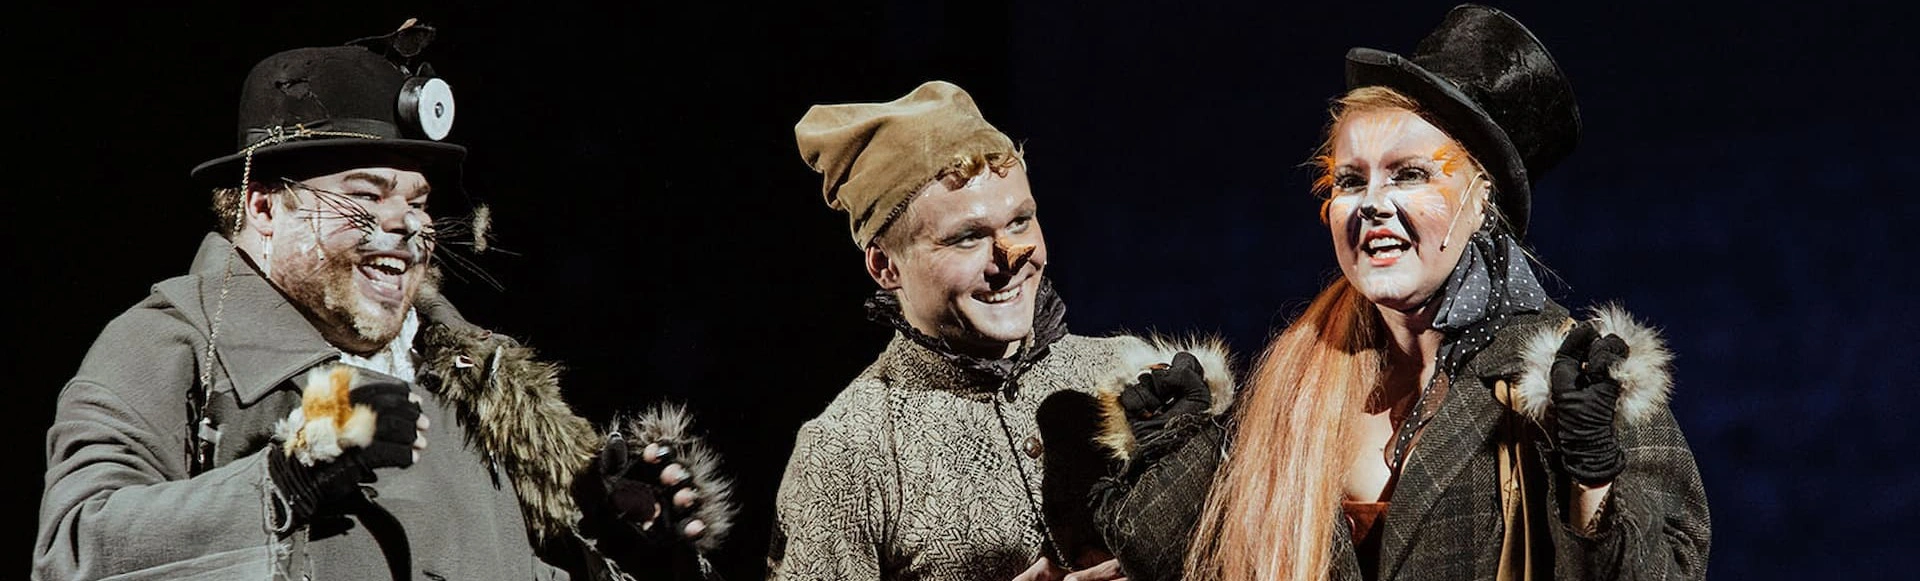 Сказка о Буратино оживет на сцене Малого театра: Увлекательное приключение для детей и взрослых